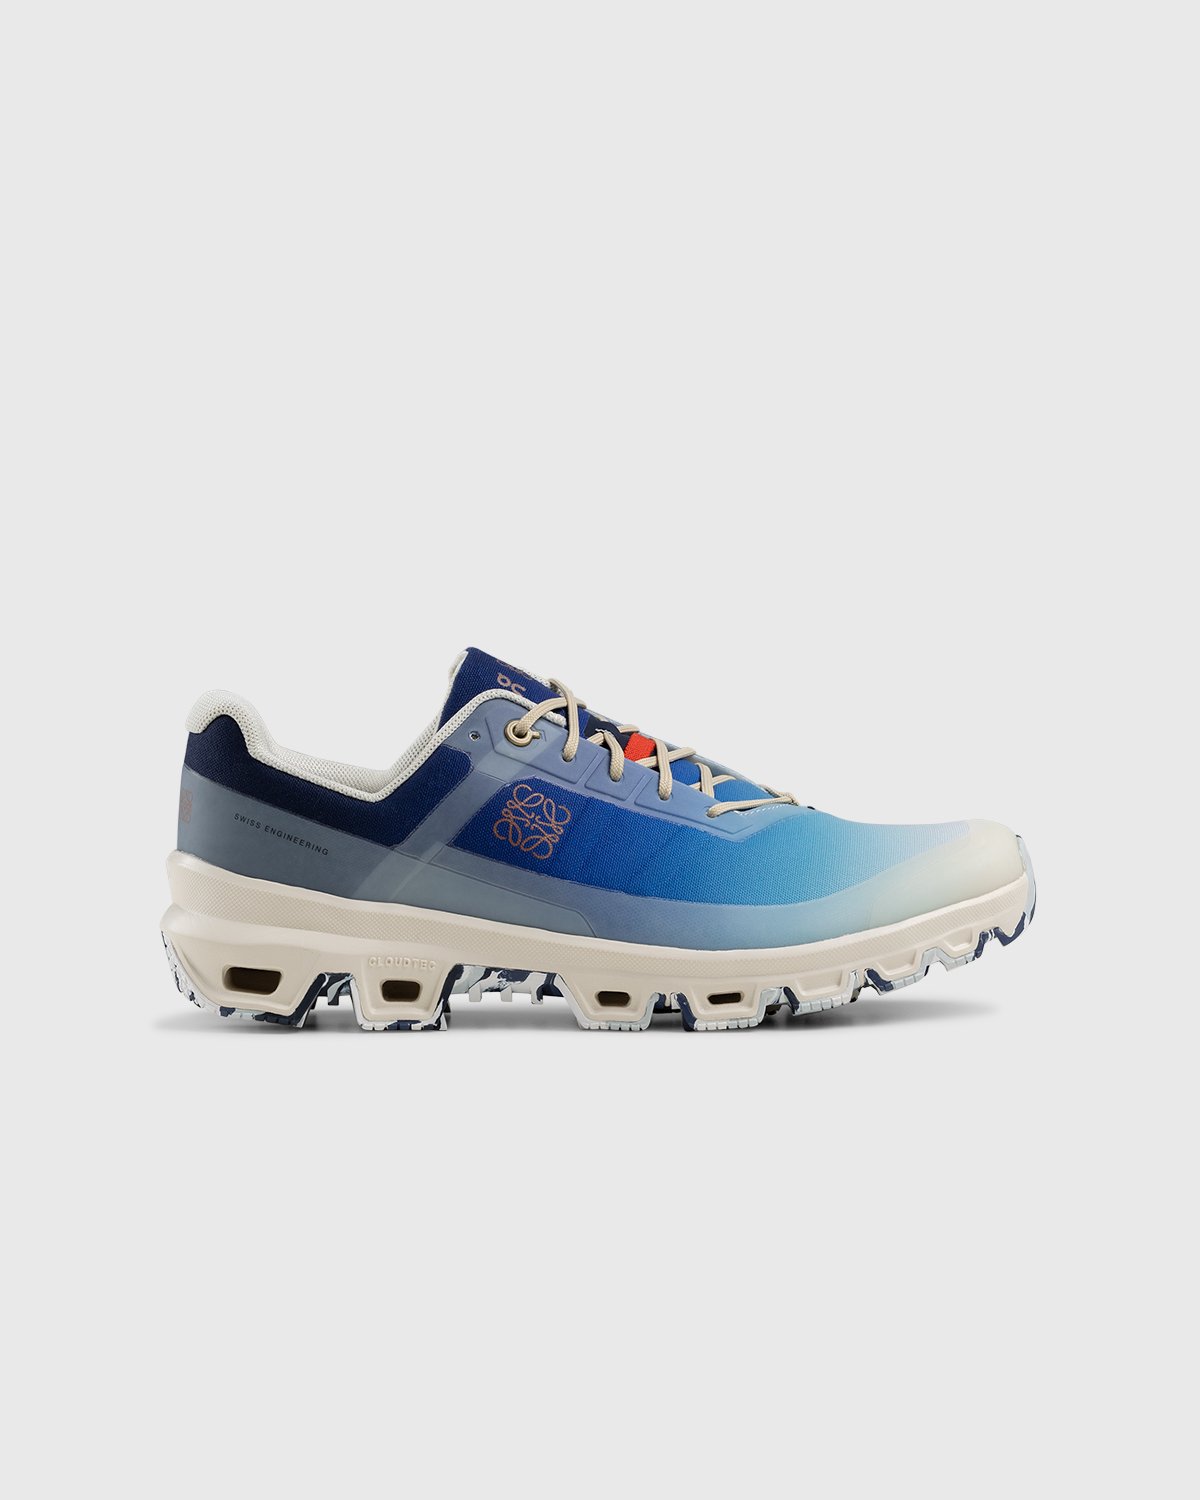 Loewe x On - Men's Cloudventure Gradient Blue - Footwear - Blue - Image 1